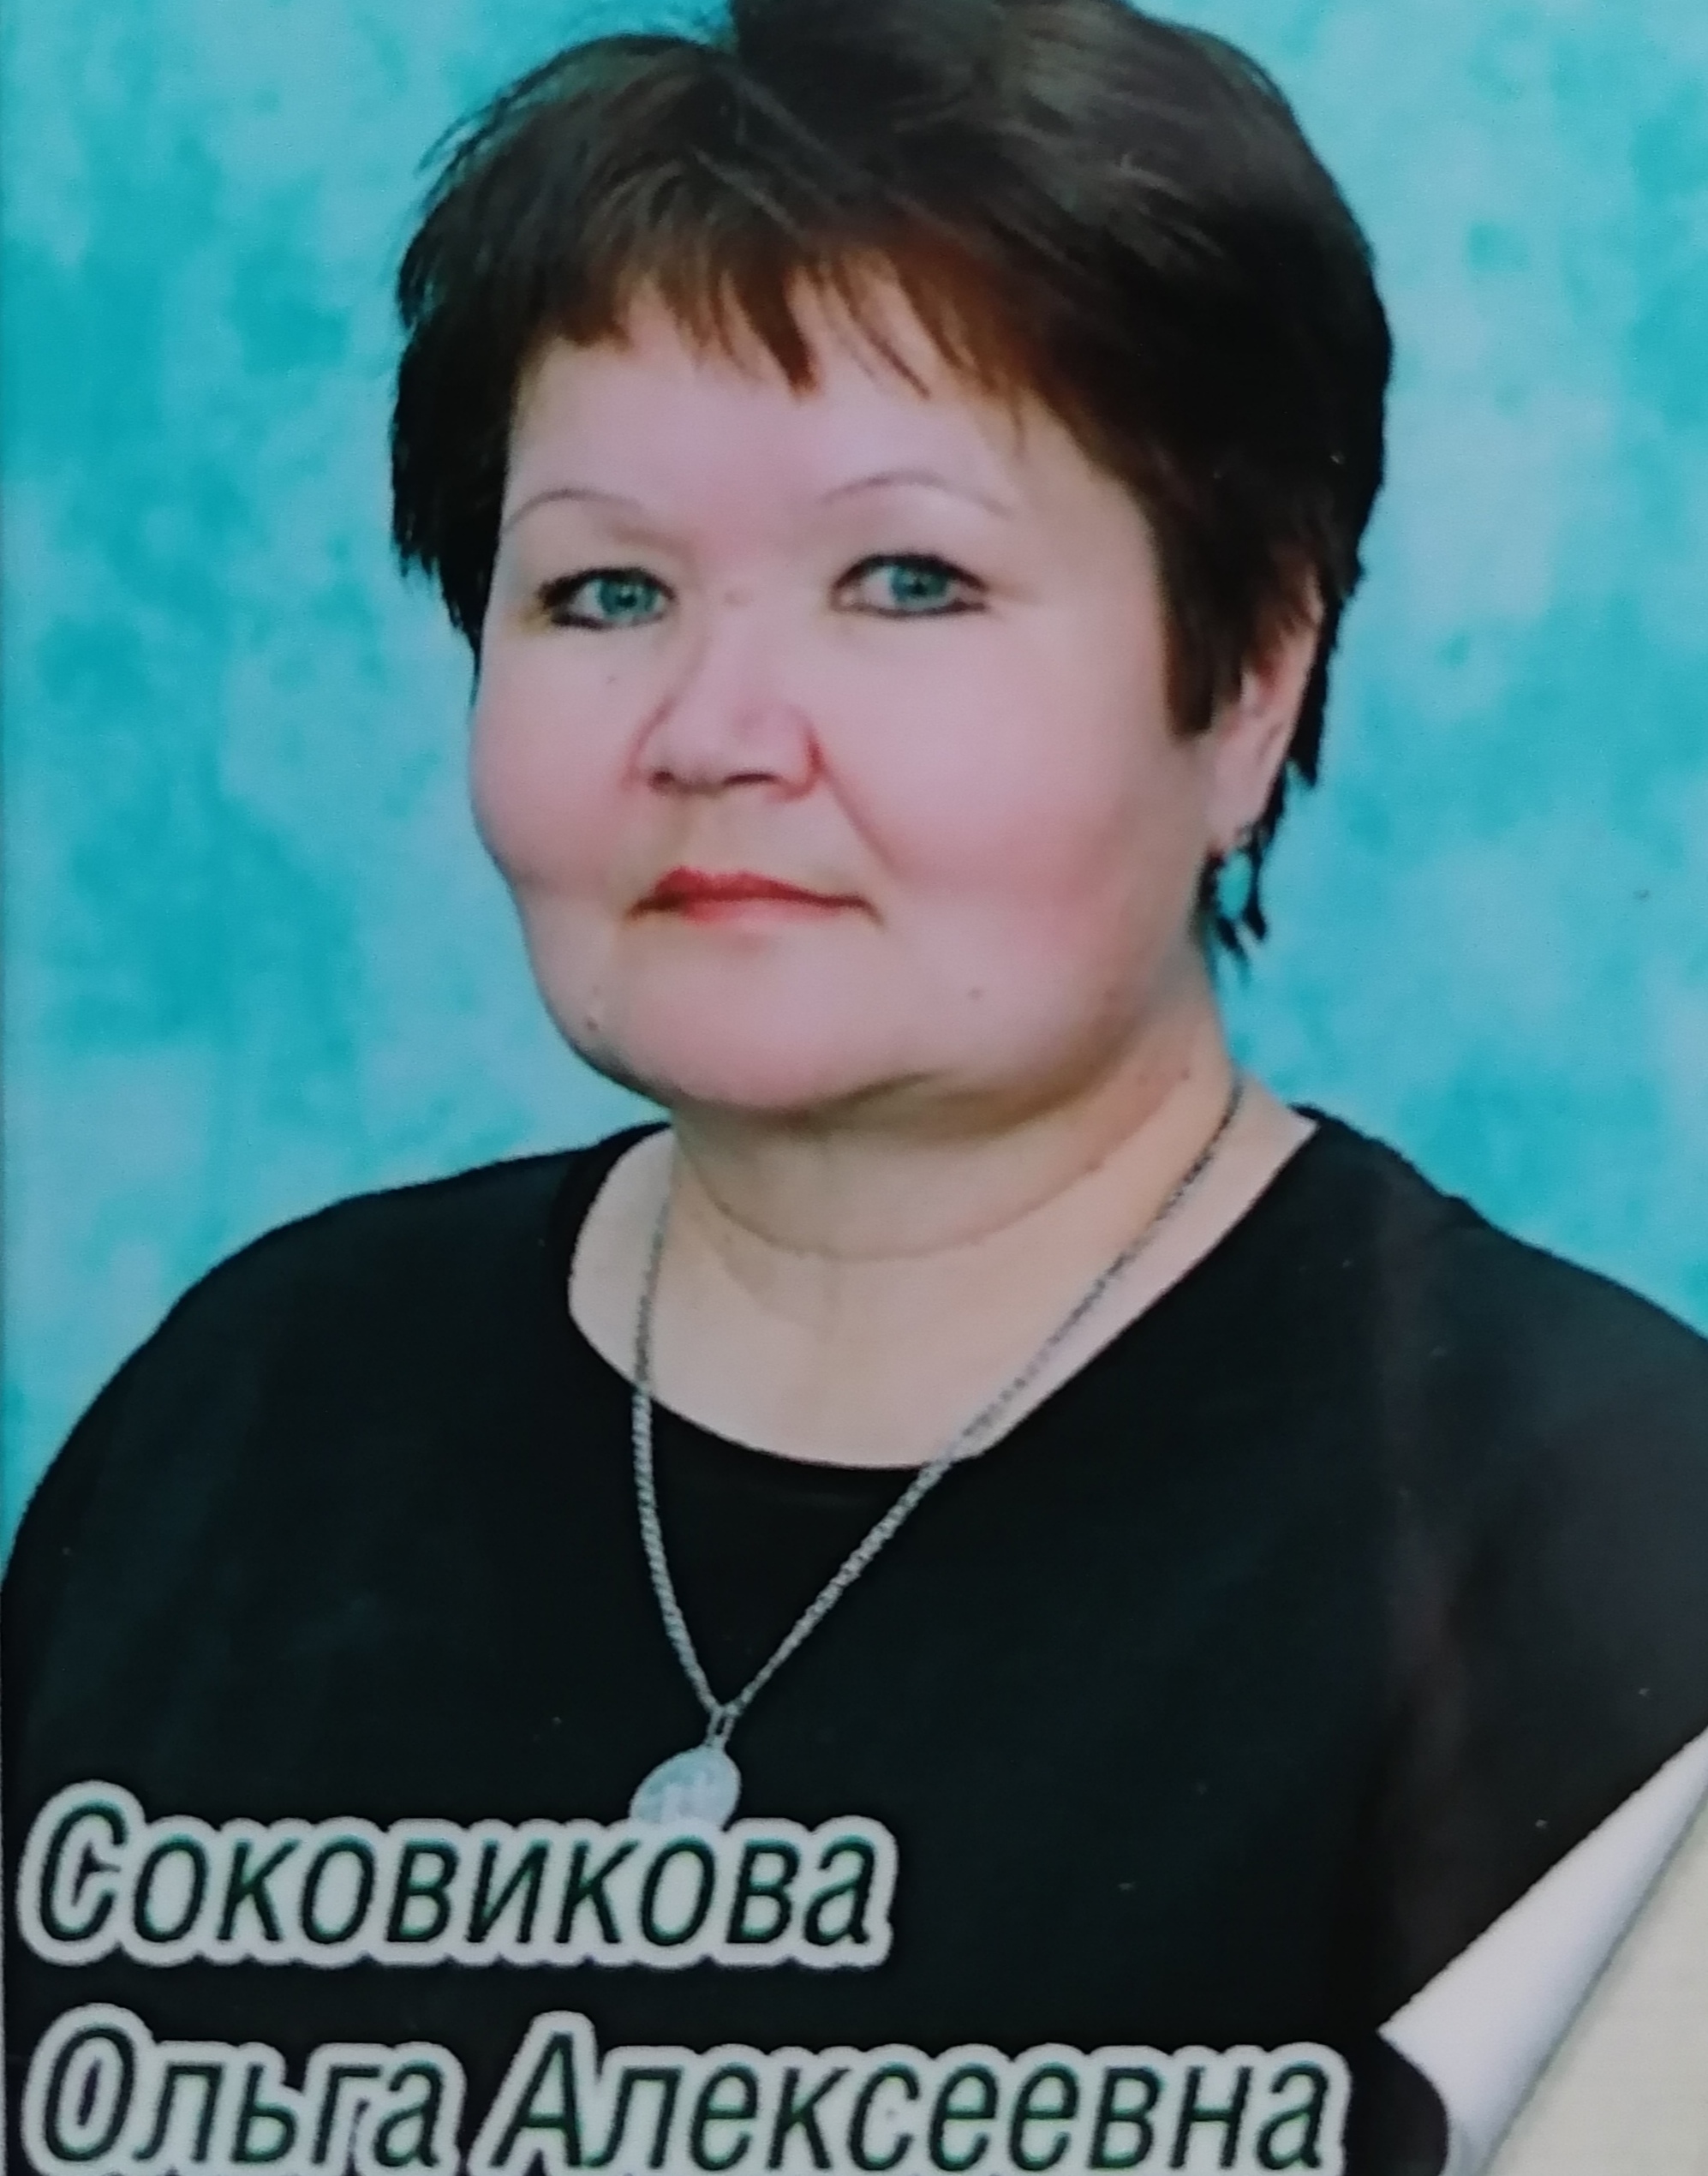 Соковикова Ольга Алексеевна.